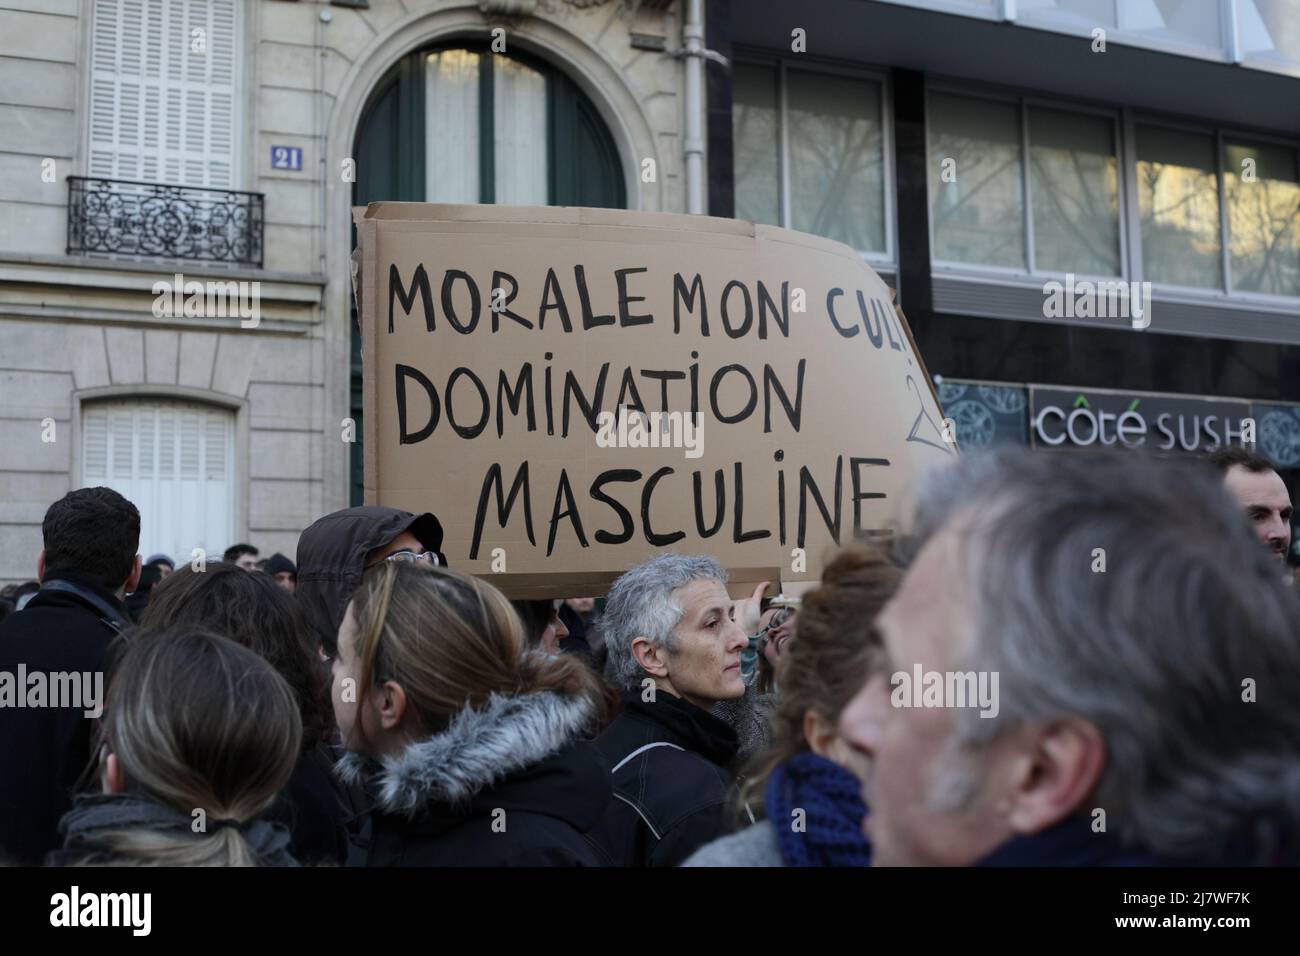 Parigi : manifestation contre le projet de loi anti-avortement en Espagne 01er février 2014. Pancarte 'orale mon cul, dominazione maschile' Foto Stock